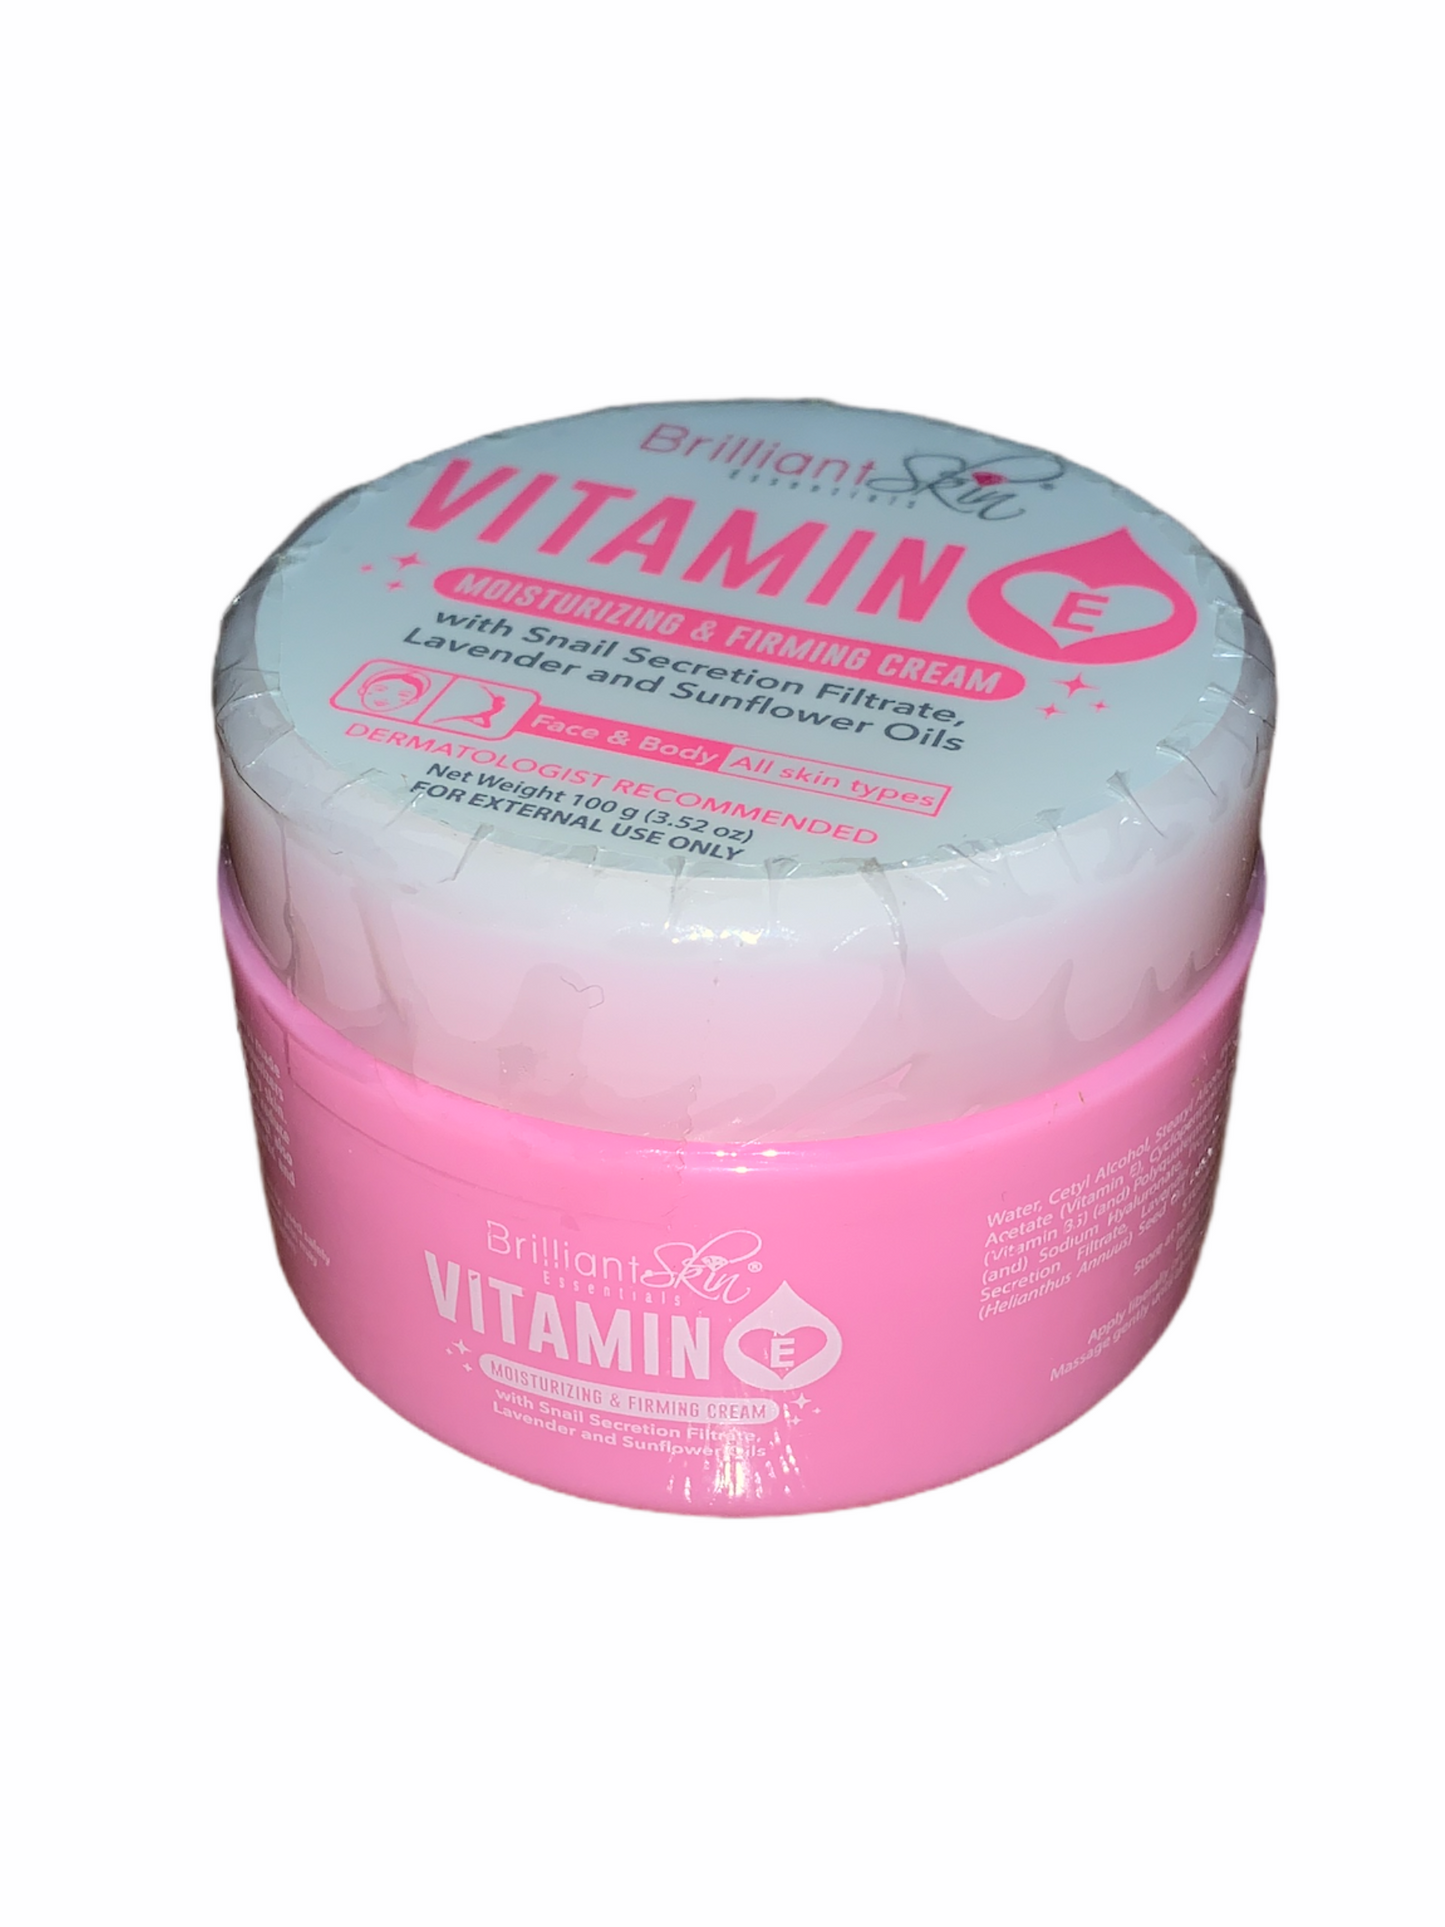 Brilliant Skin Essentials Moisturizer 100g